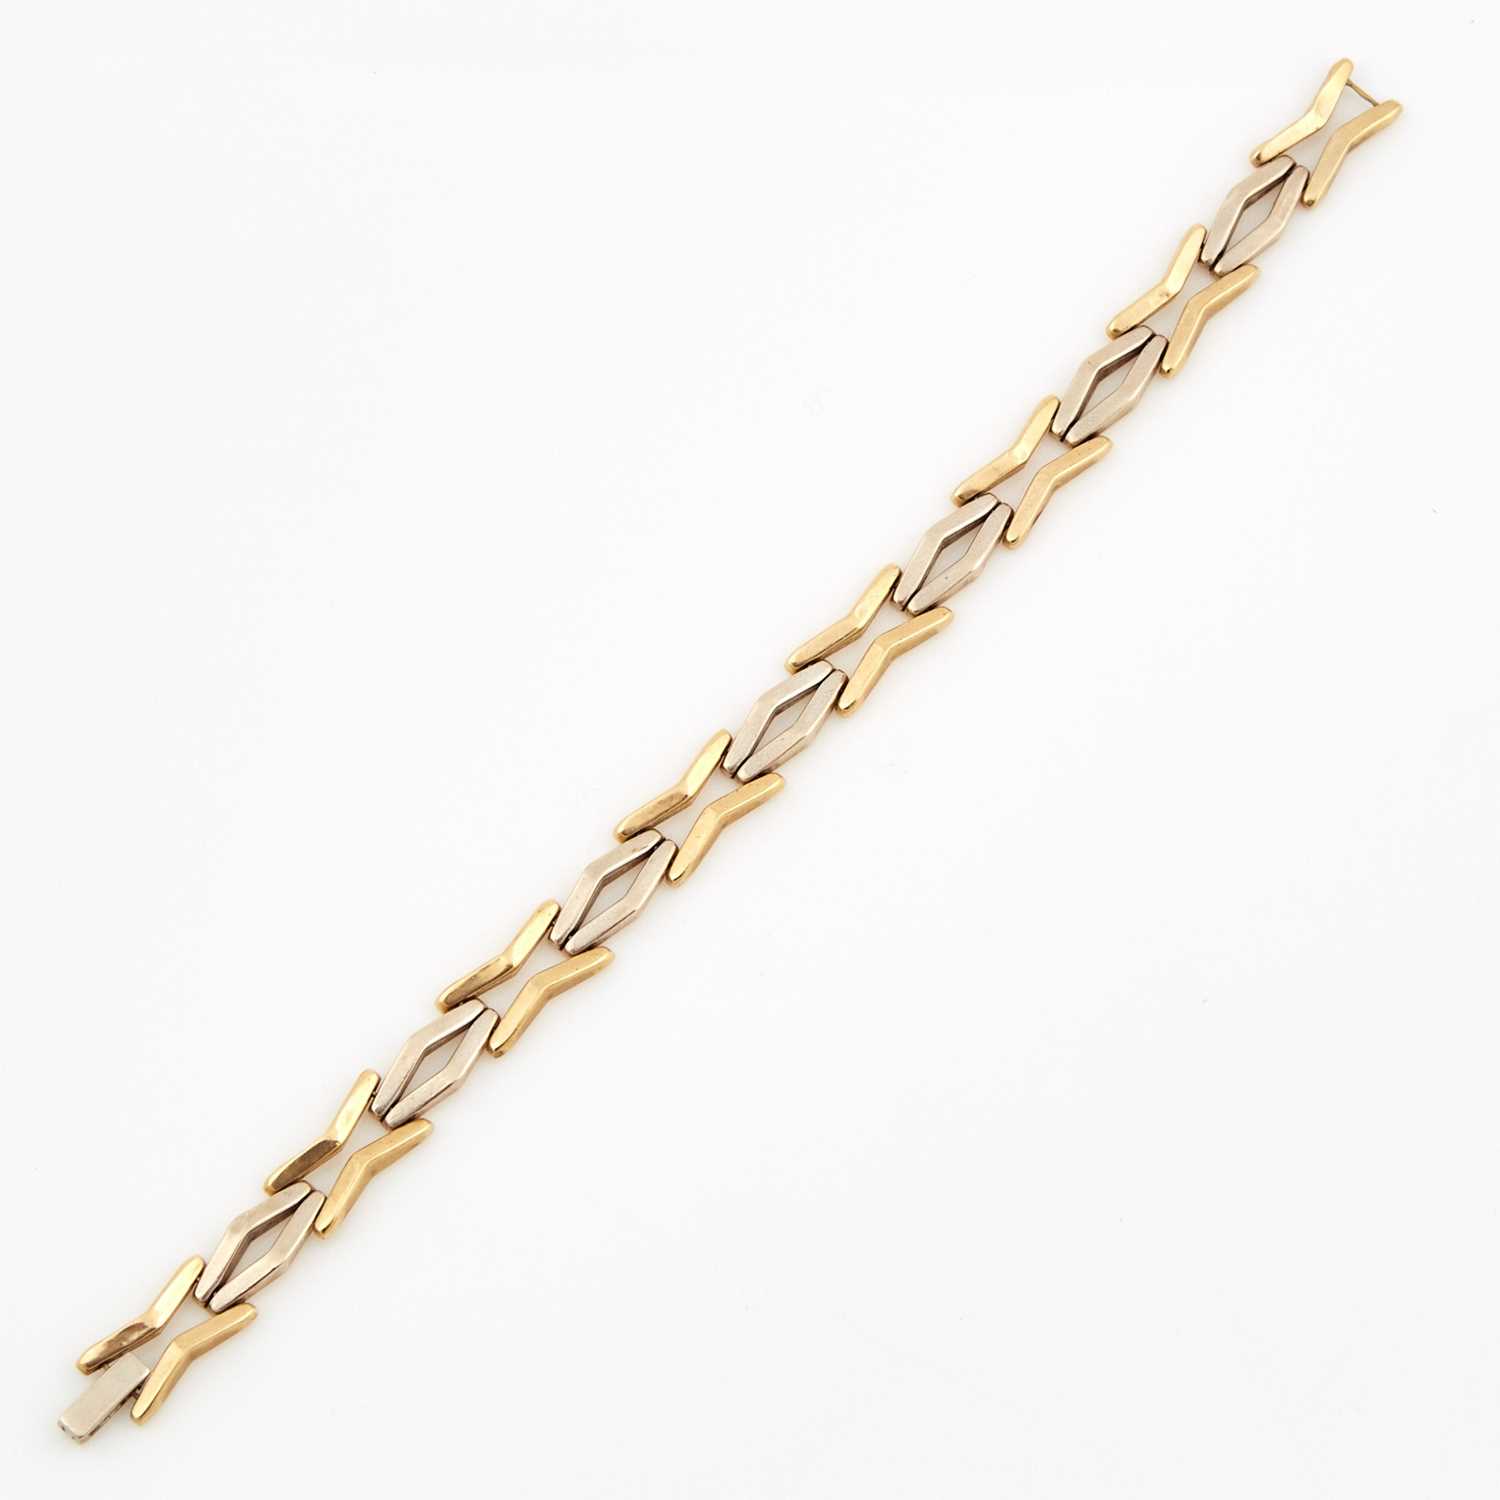 Lot 259 - Gold Flexible Bracelet, 14K 6 dwt.